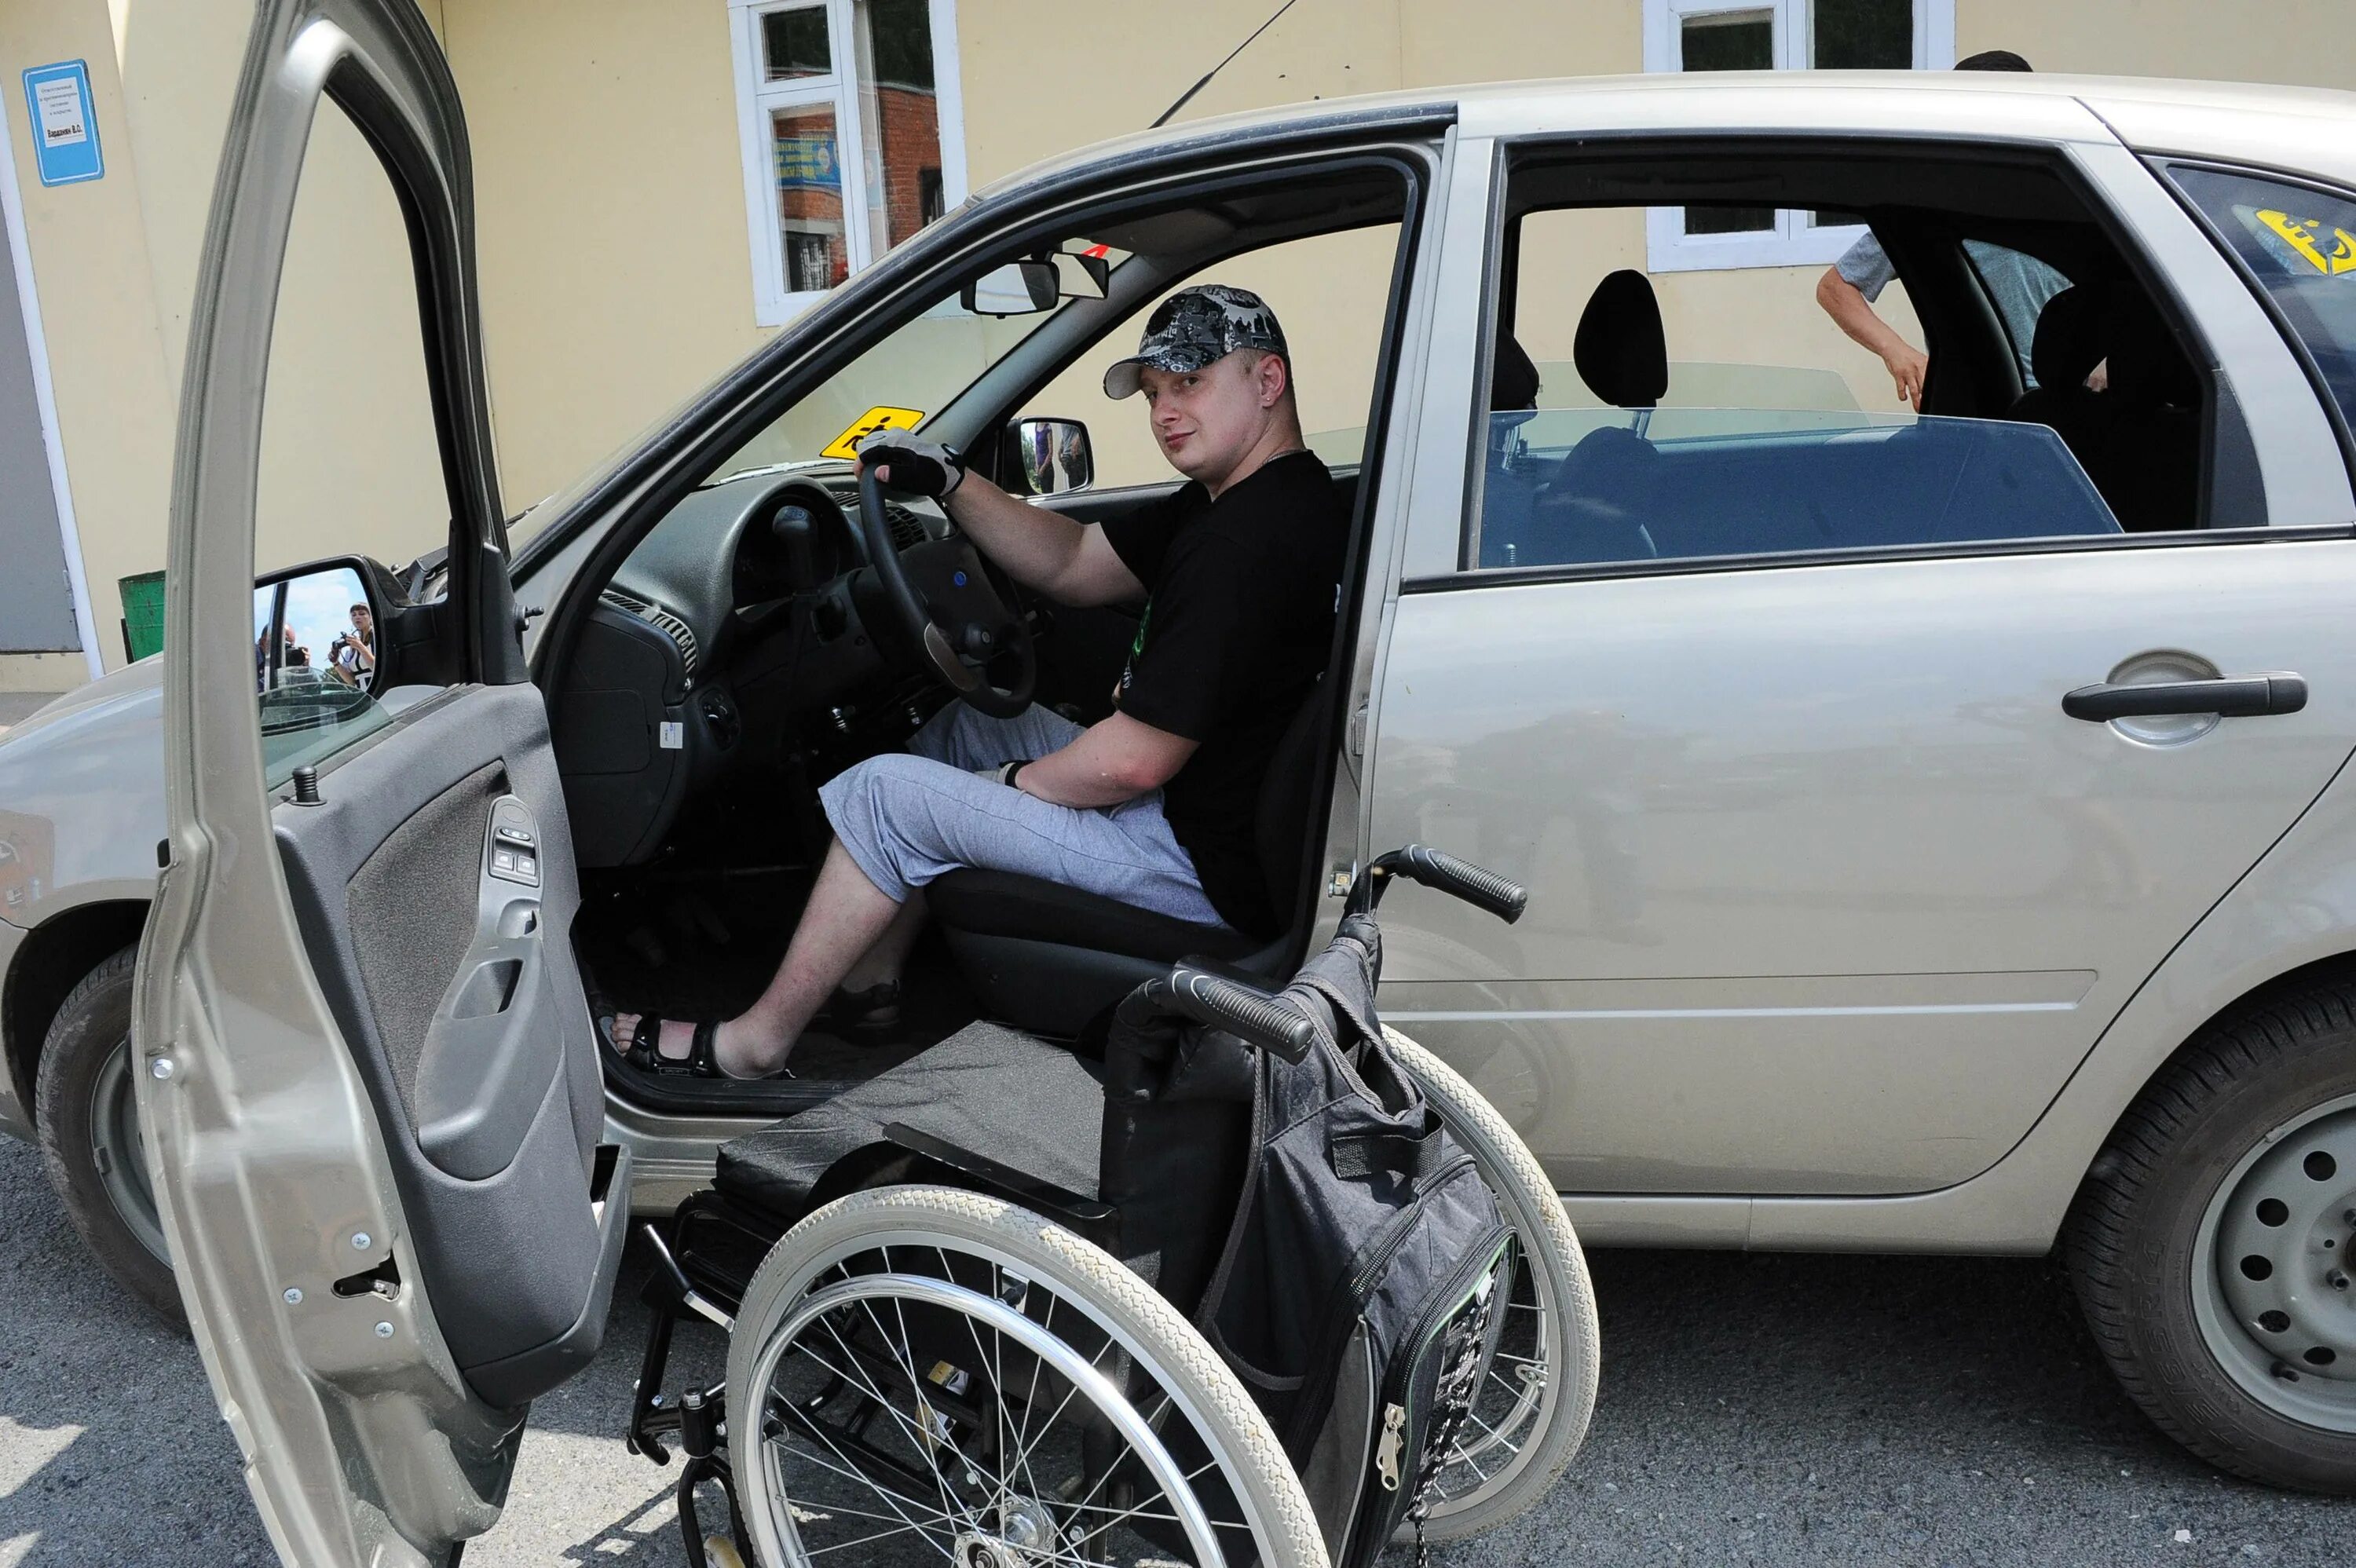 Автомобиль инвалидам 1 группы. Автомобиль для инвалидов. Автомобиль для инвалидов колясочников. Машина для инвалидов с ручным управлением. Машина для инвалидов колясочников с ручным управлением.